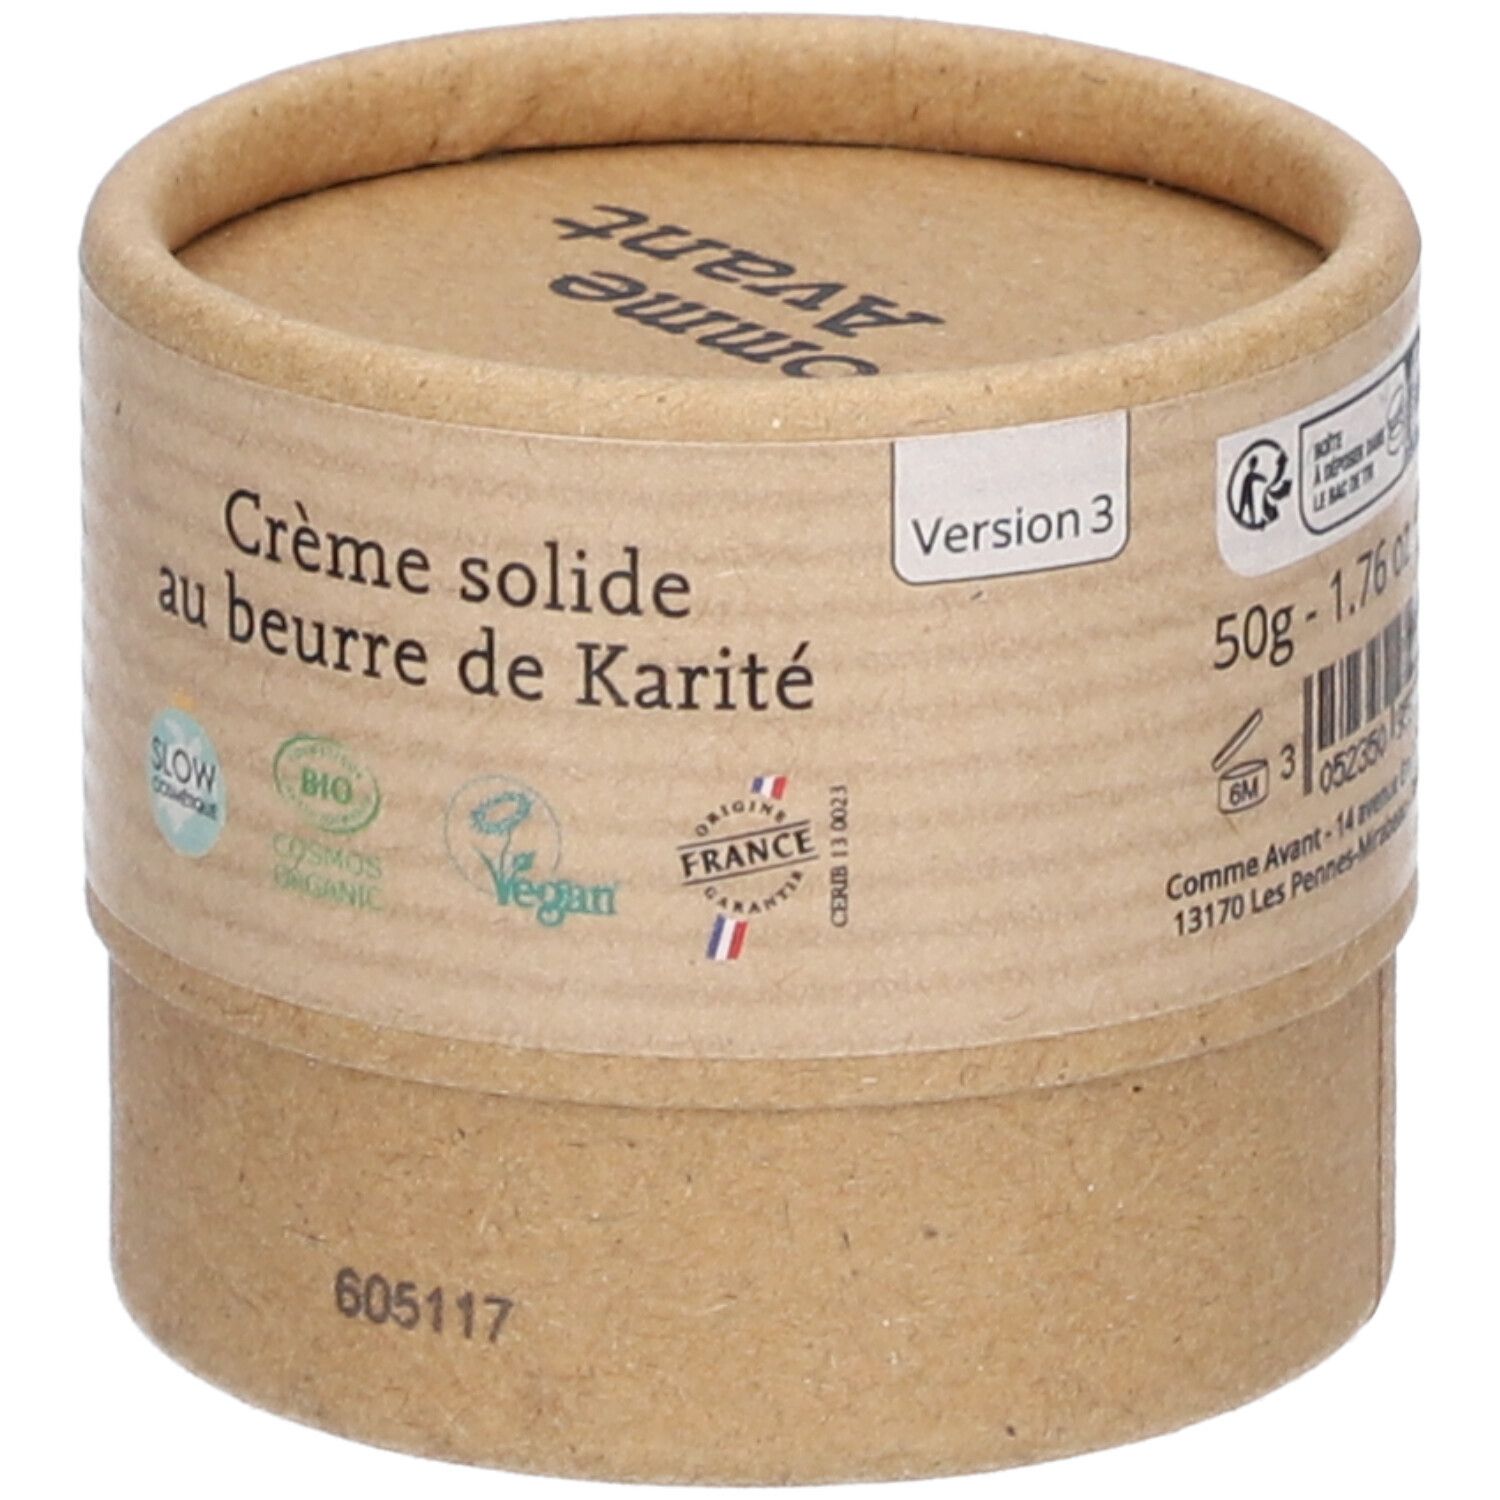 Crème solide au beurre de karité V3 - 50g Comme Avant